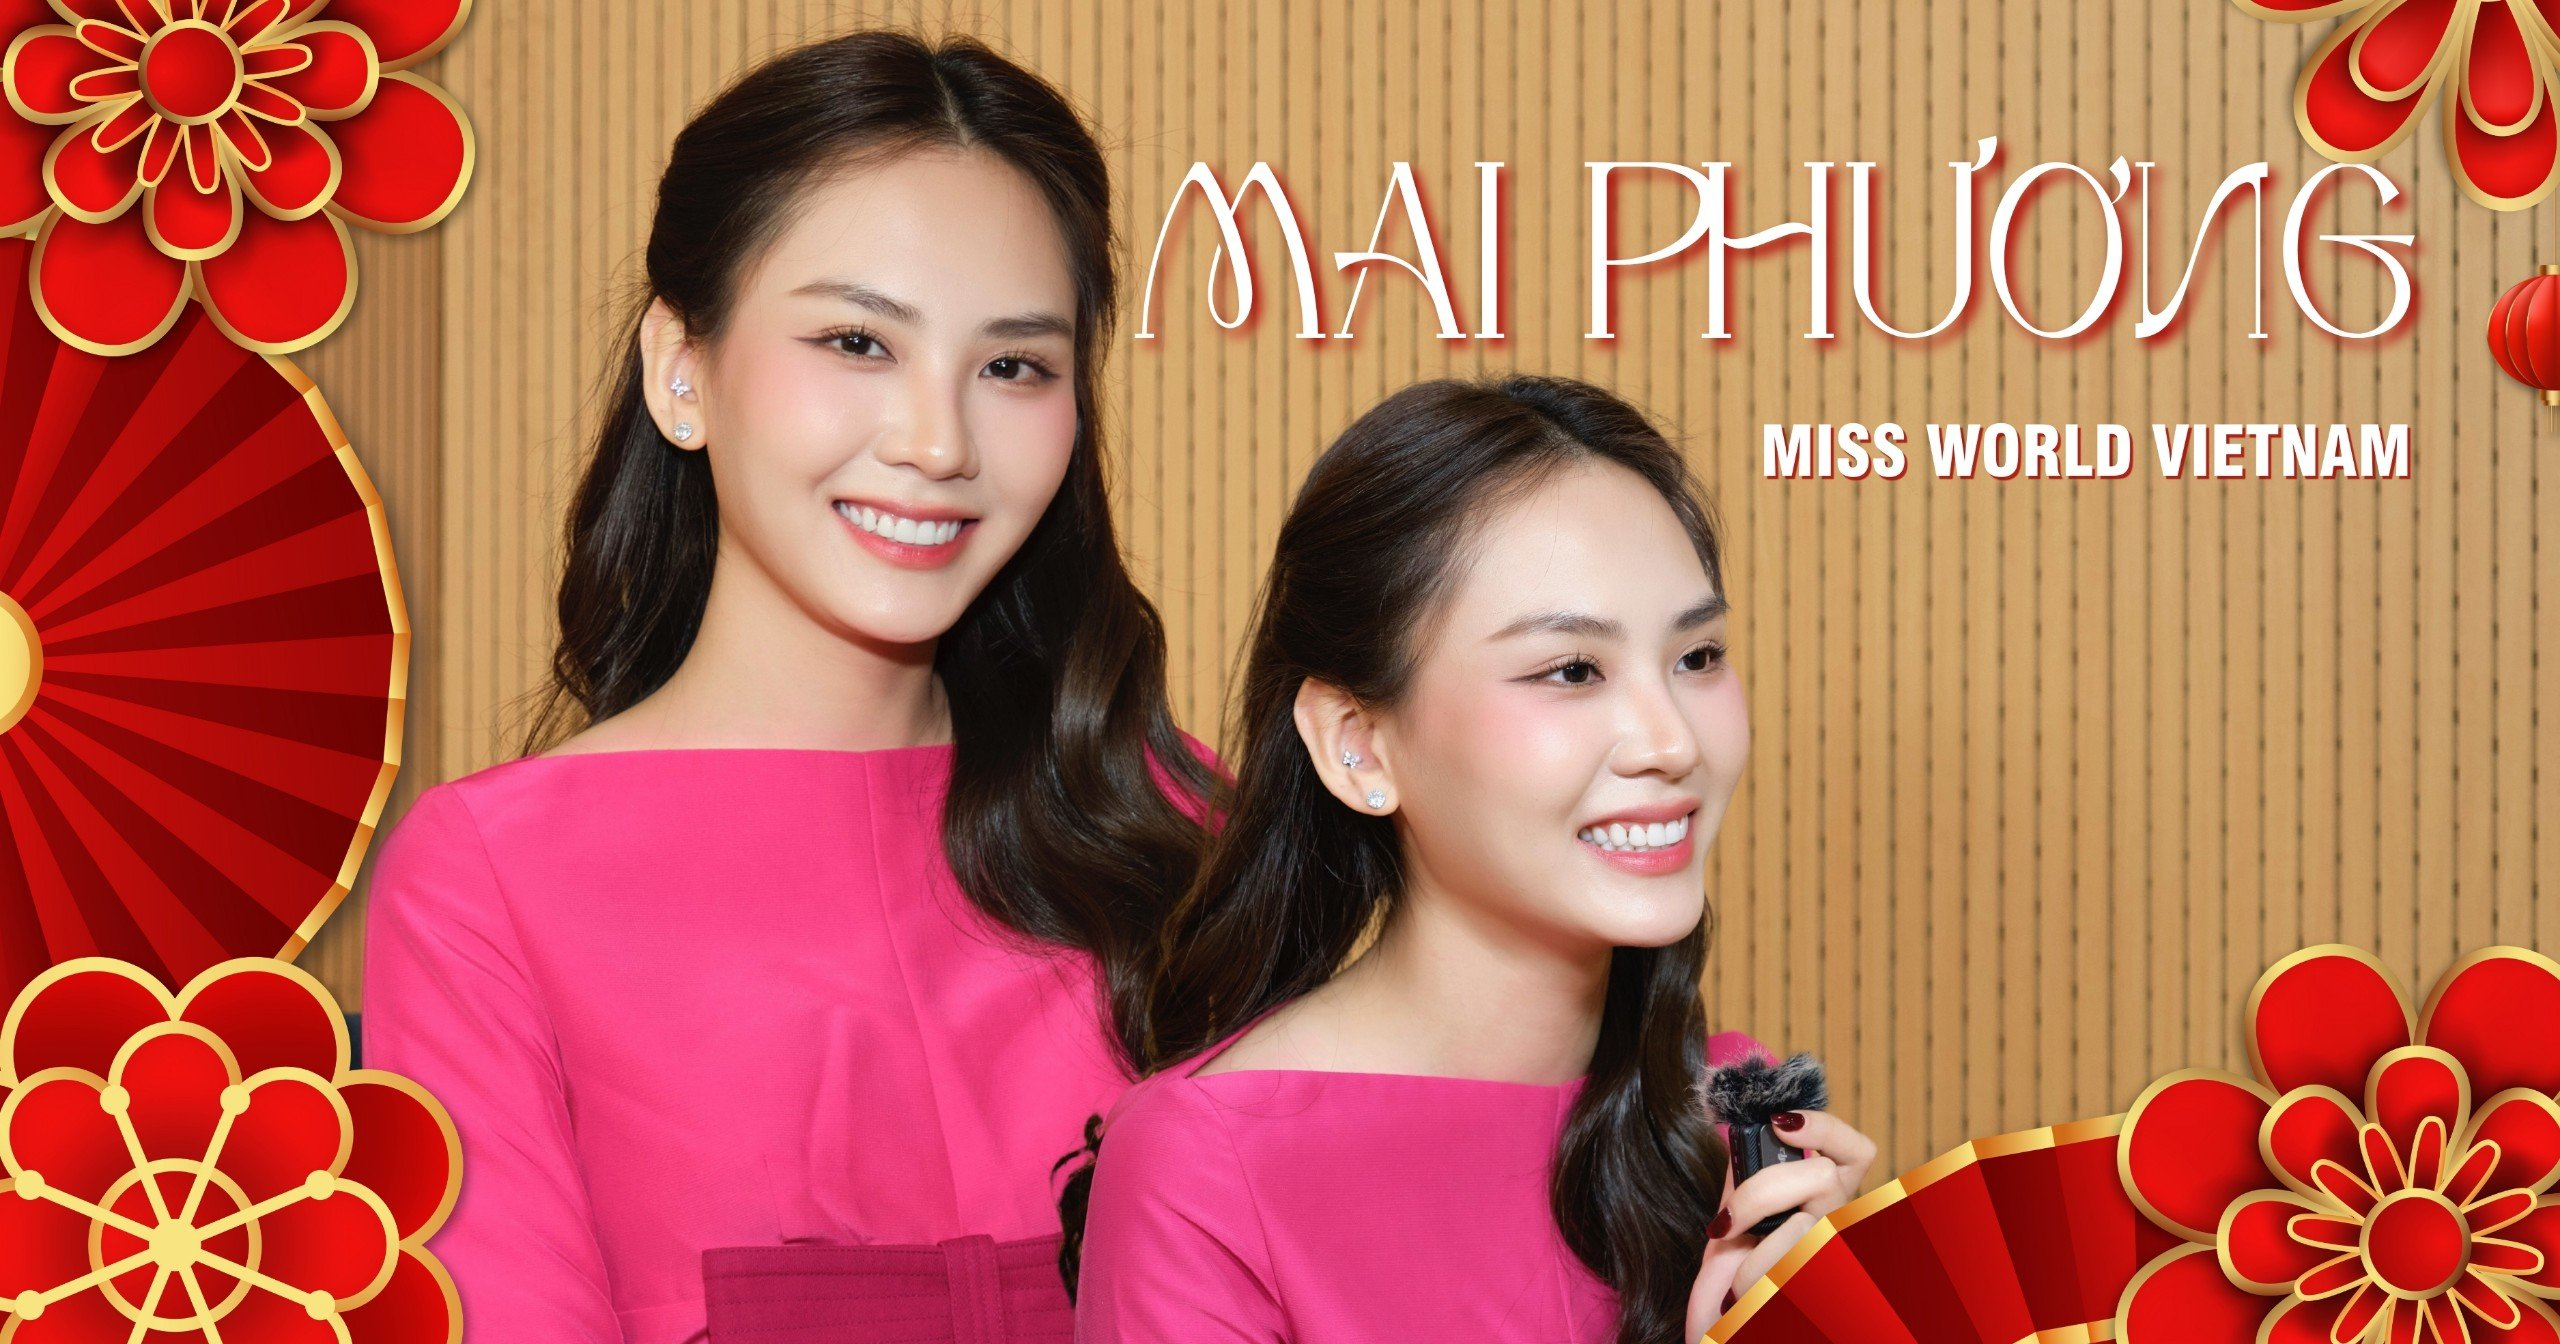 Hoa hậu Mai Phương: "Miss World là trải nghiệm quý giá trong cuộc đời, tôi sẽ tận hưởng hành trình này"